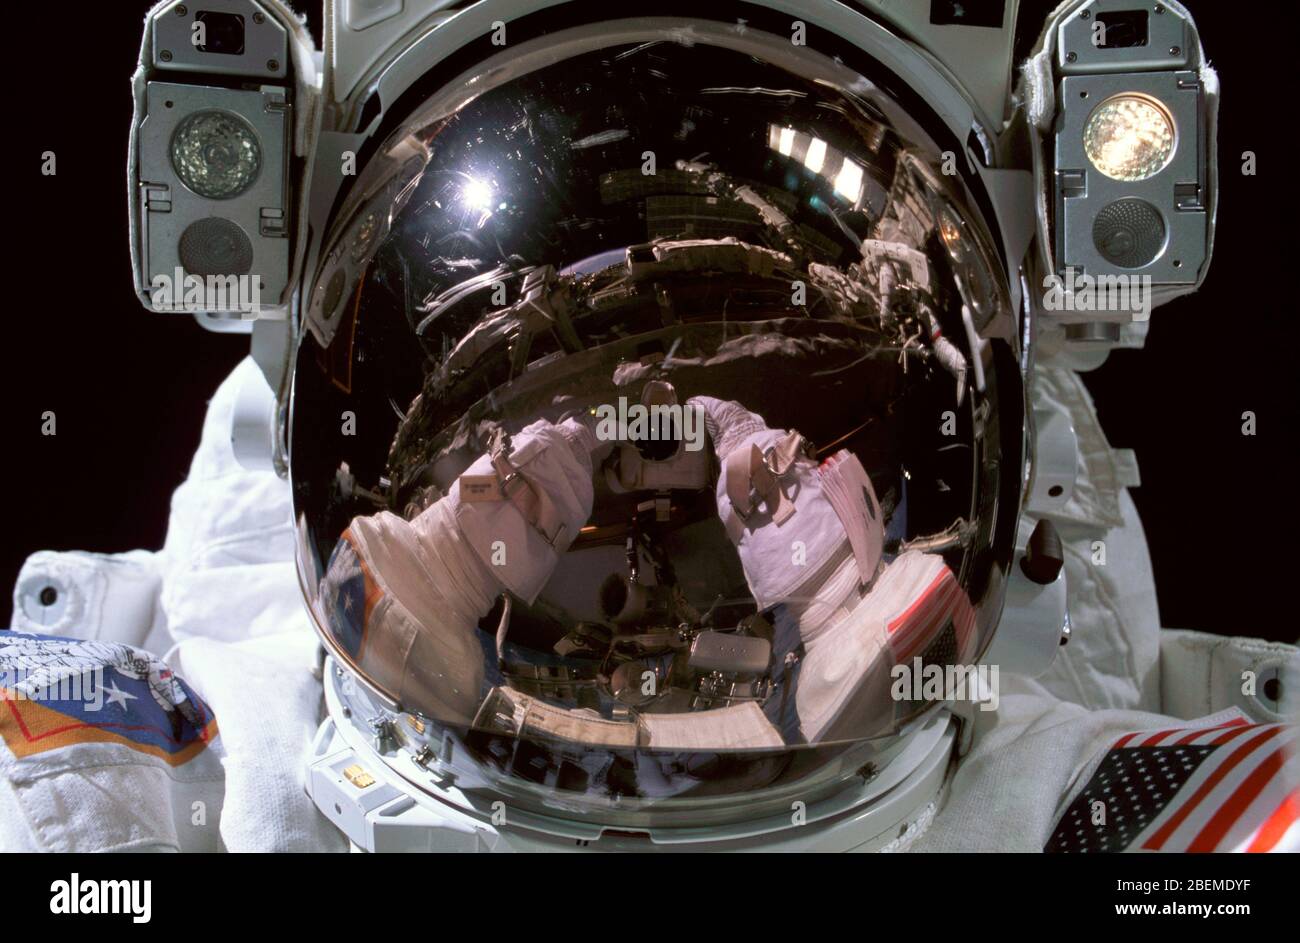 ISS - 15 gennaio 2003 - Astronauta Donald R. Pettit, Expedition 6 NASA ISS ufficiale scientifico, fotografa la sua visiera del casco durante un attività extravehicular Foto Stock